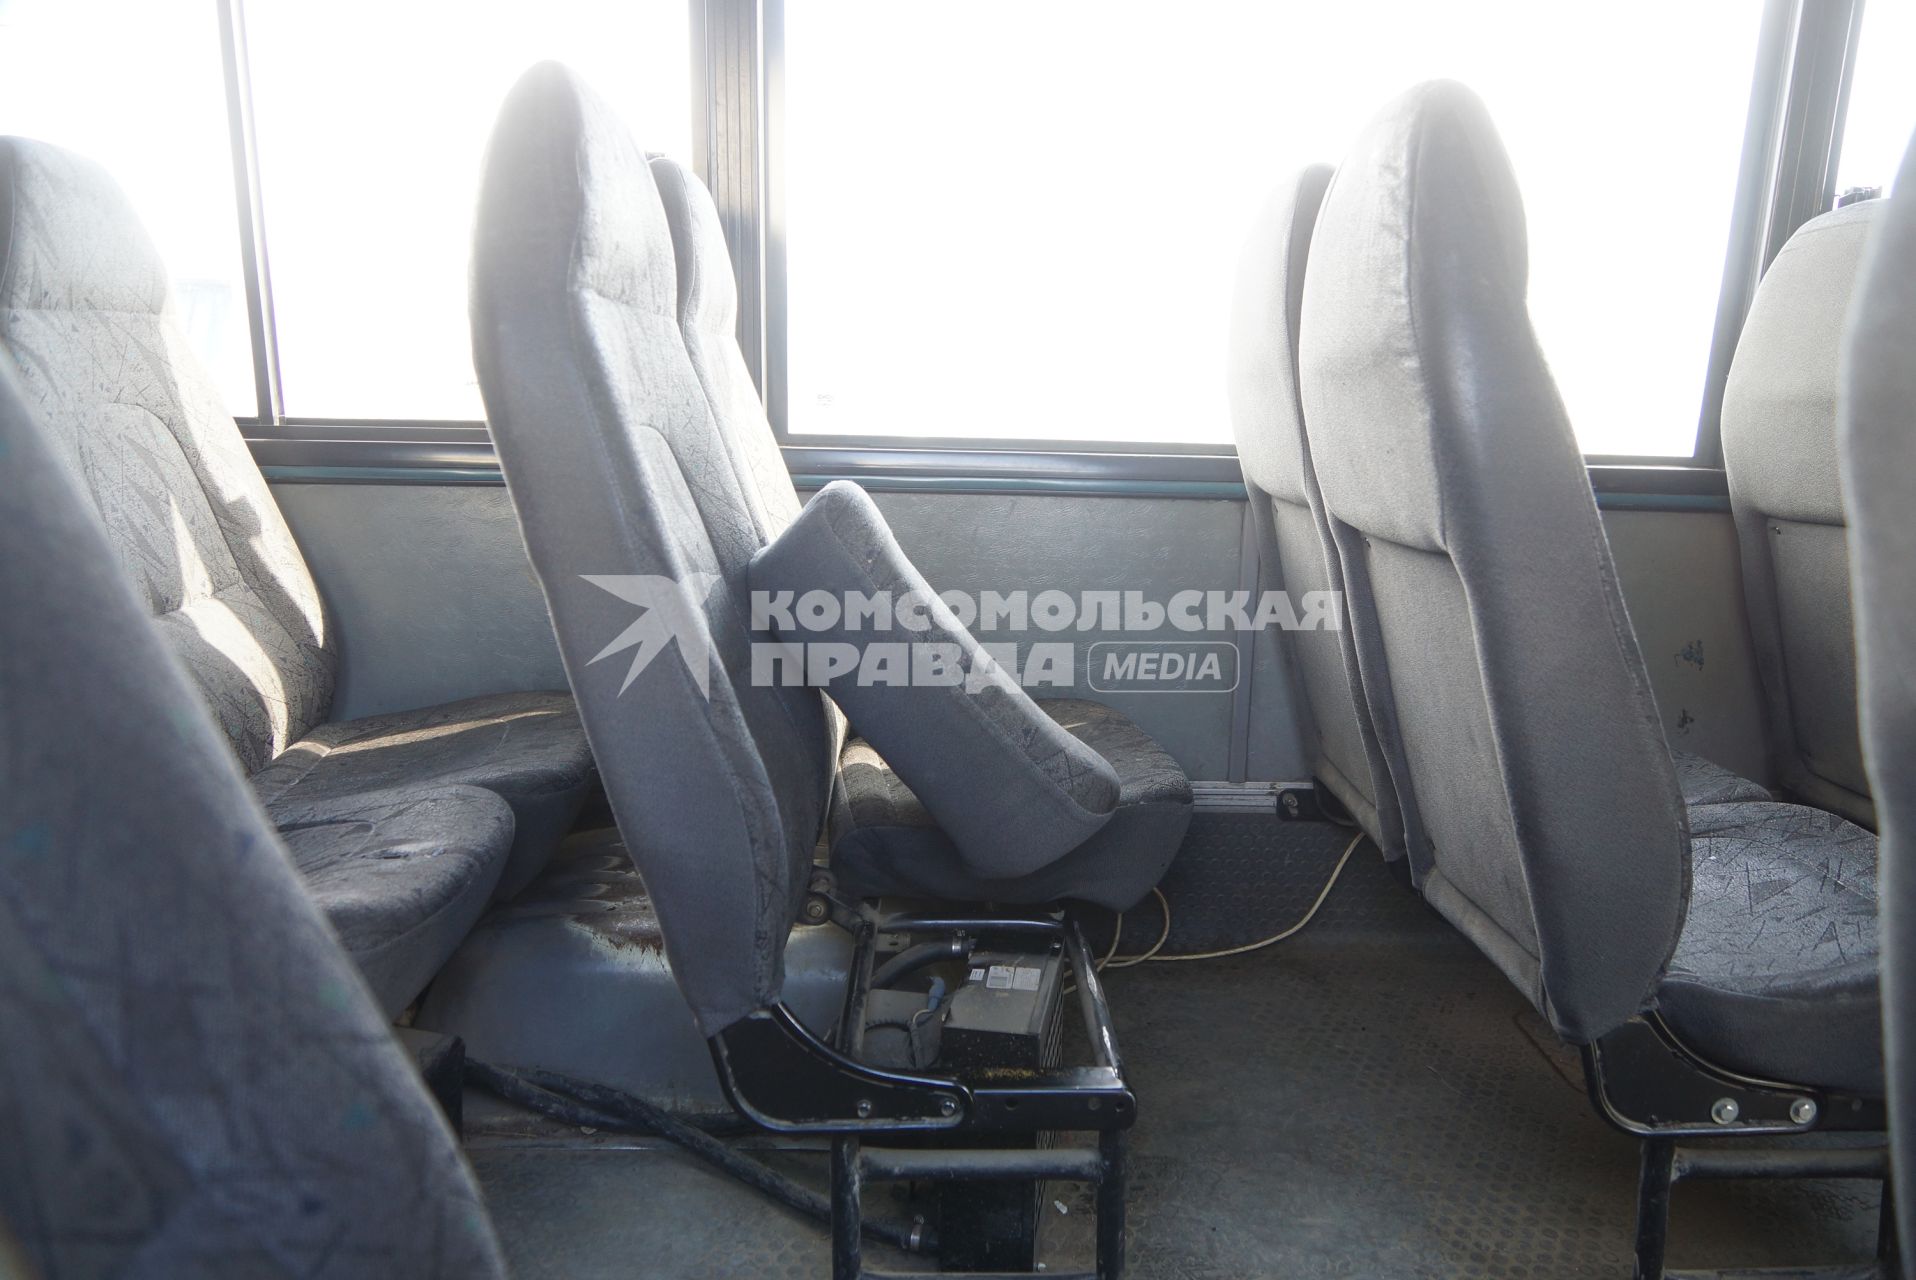 Сломаное сиденье в салоне маршрутного автобуса. Рейд ГИБДД по выявлению неисправных маршруток. Екатеринбург